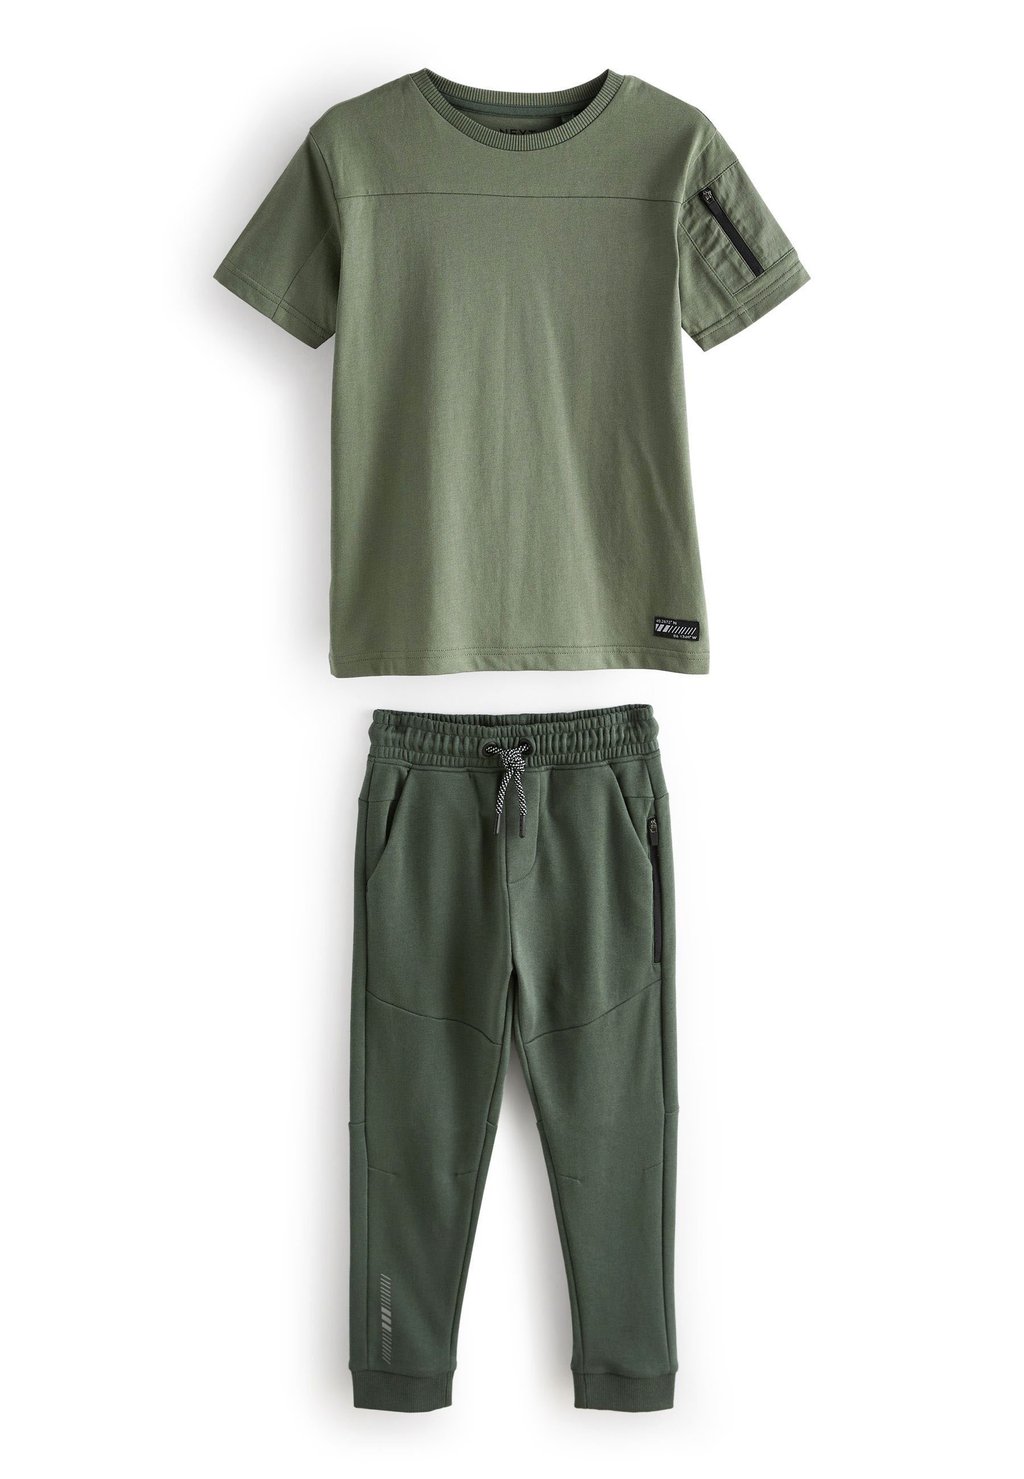 спортивные брюки next цвет khaki green camo Брюки Next, цвет khaki green